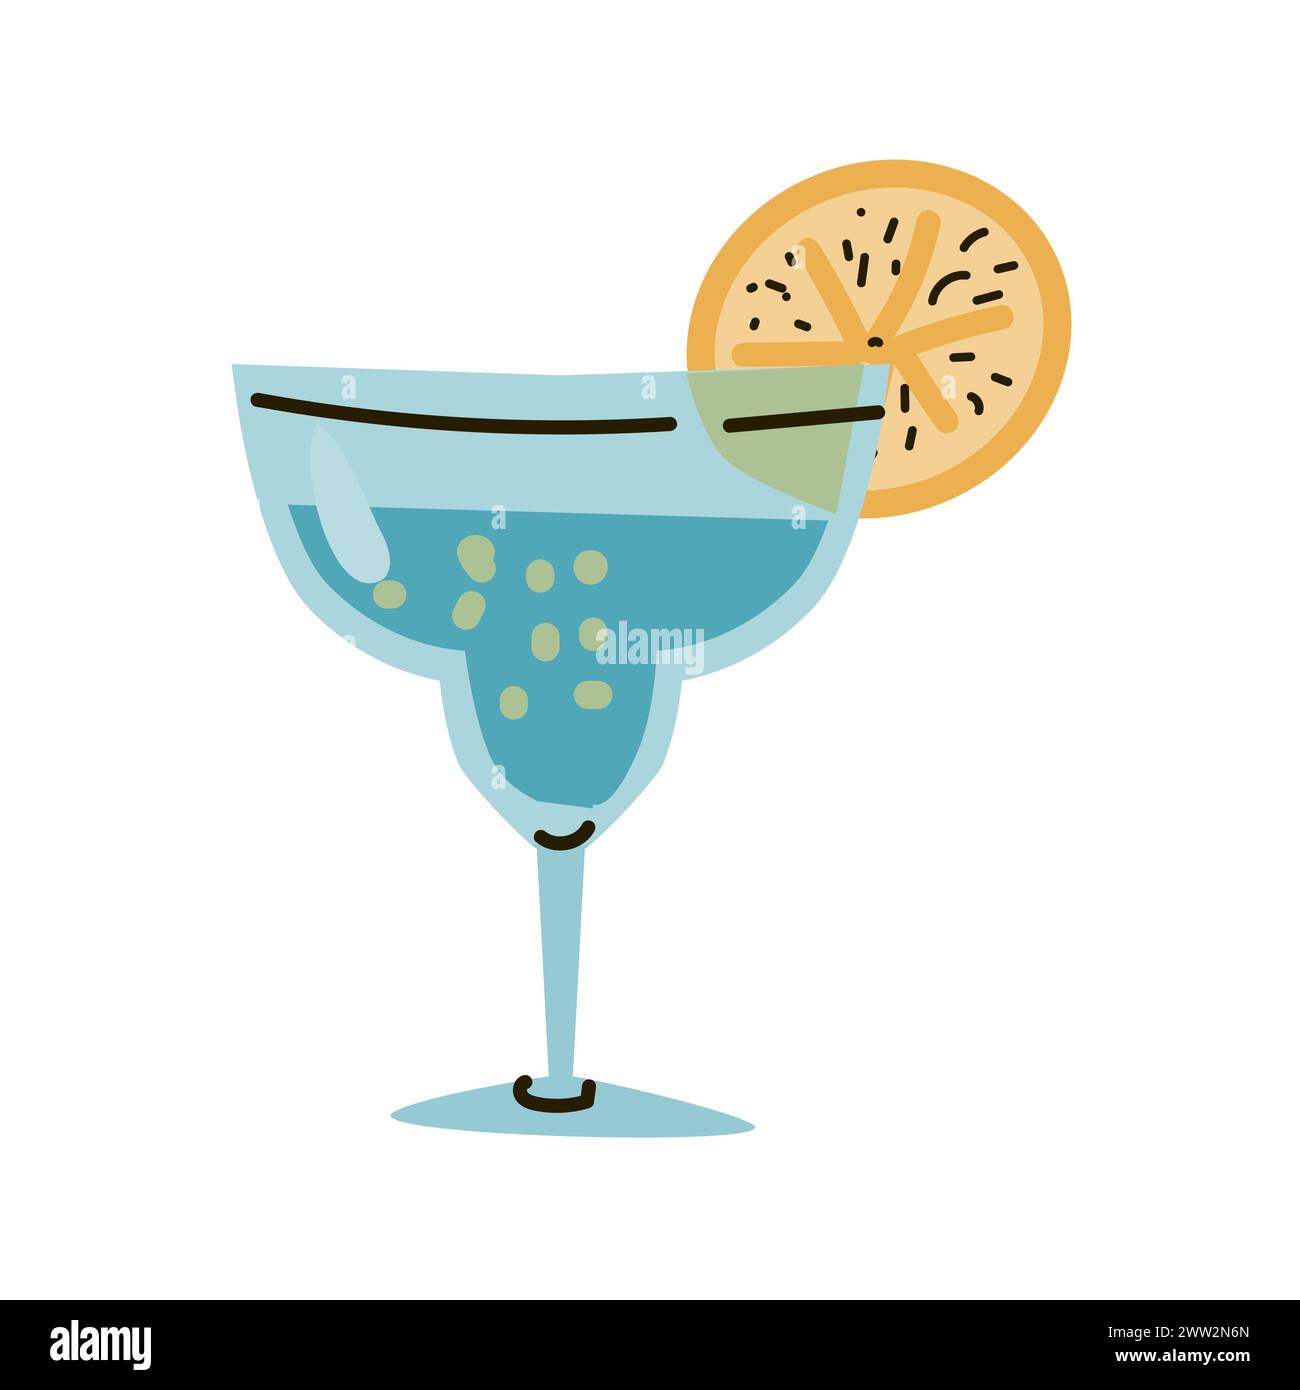 tequila mexicaine dans un verre avec illusration de tranche de citron. Illustration vectorielle dans un style plat. Peut être utilisé pour bannière de vacances mexicaines, flyer, carte. Illustration de Vecteur